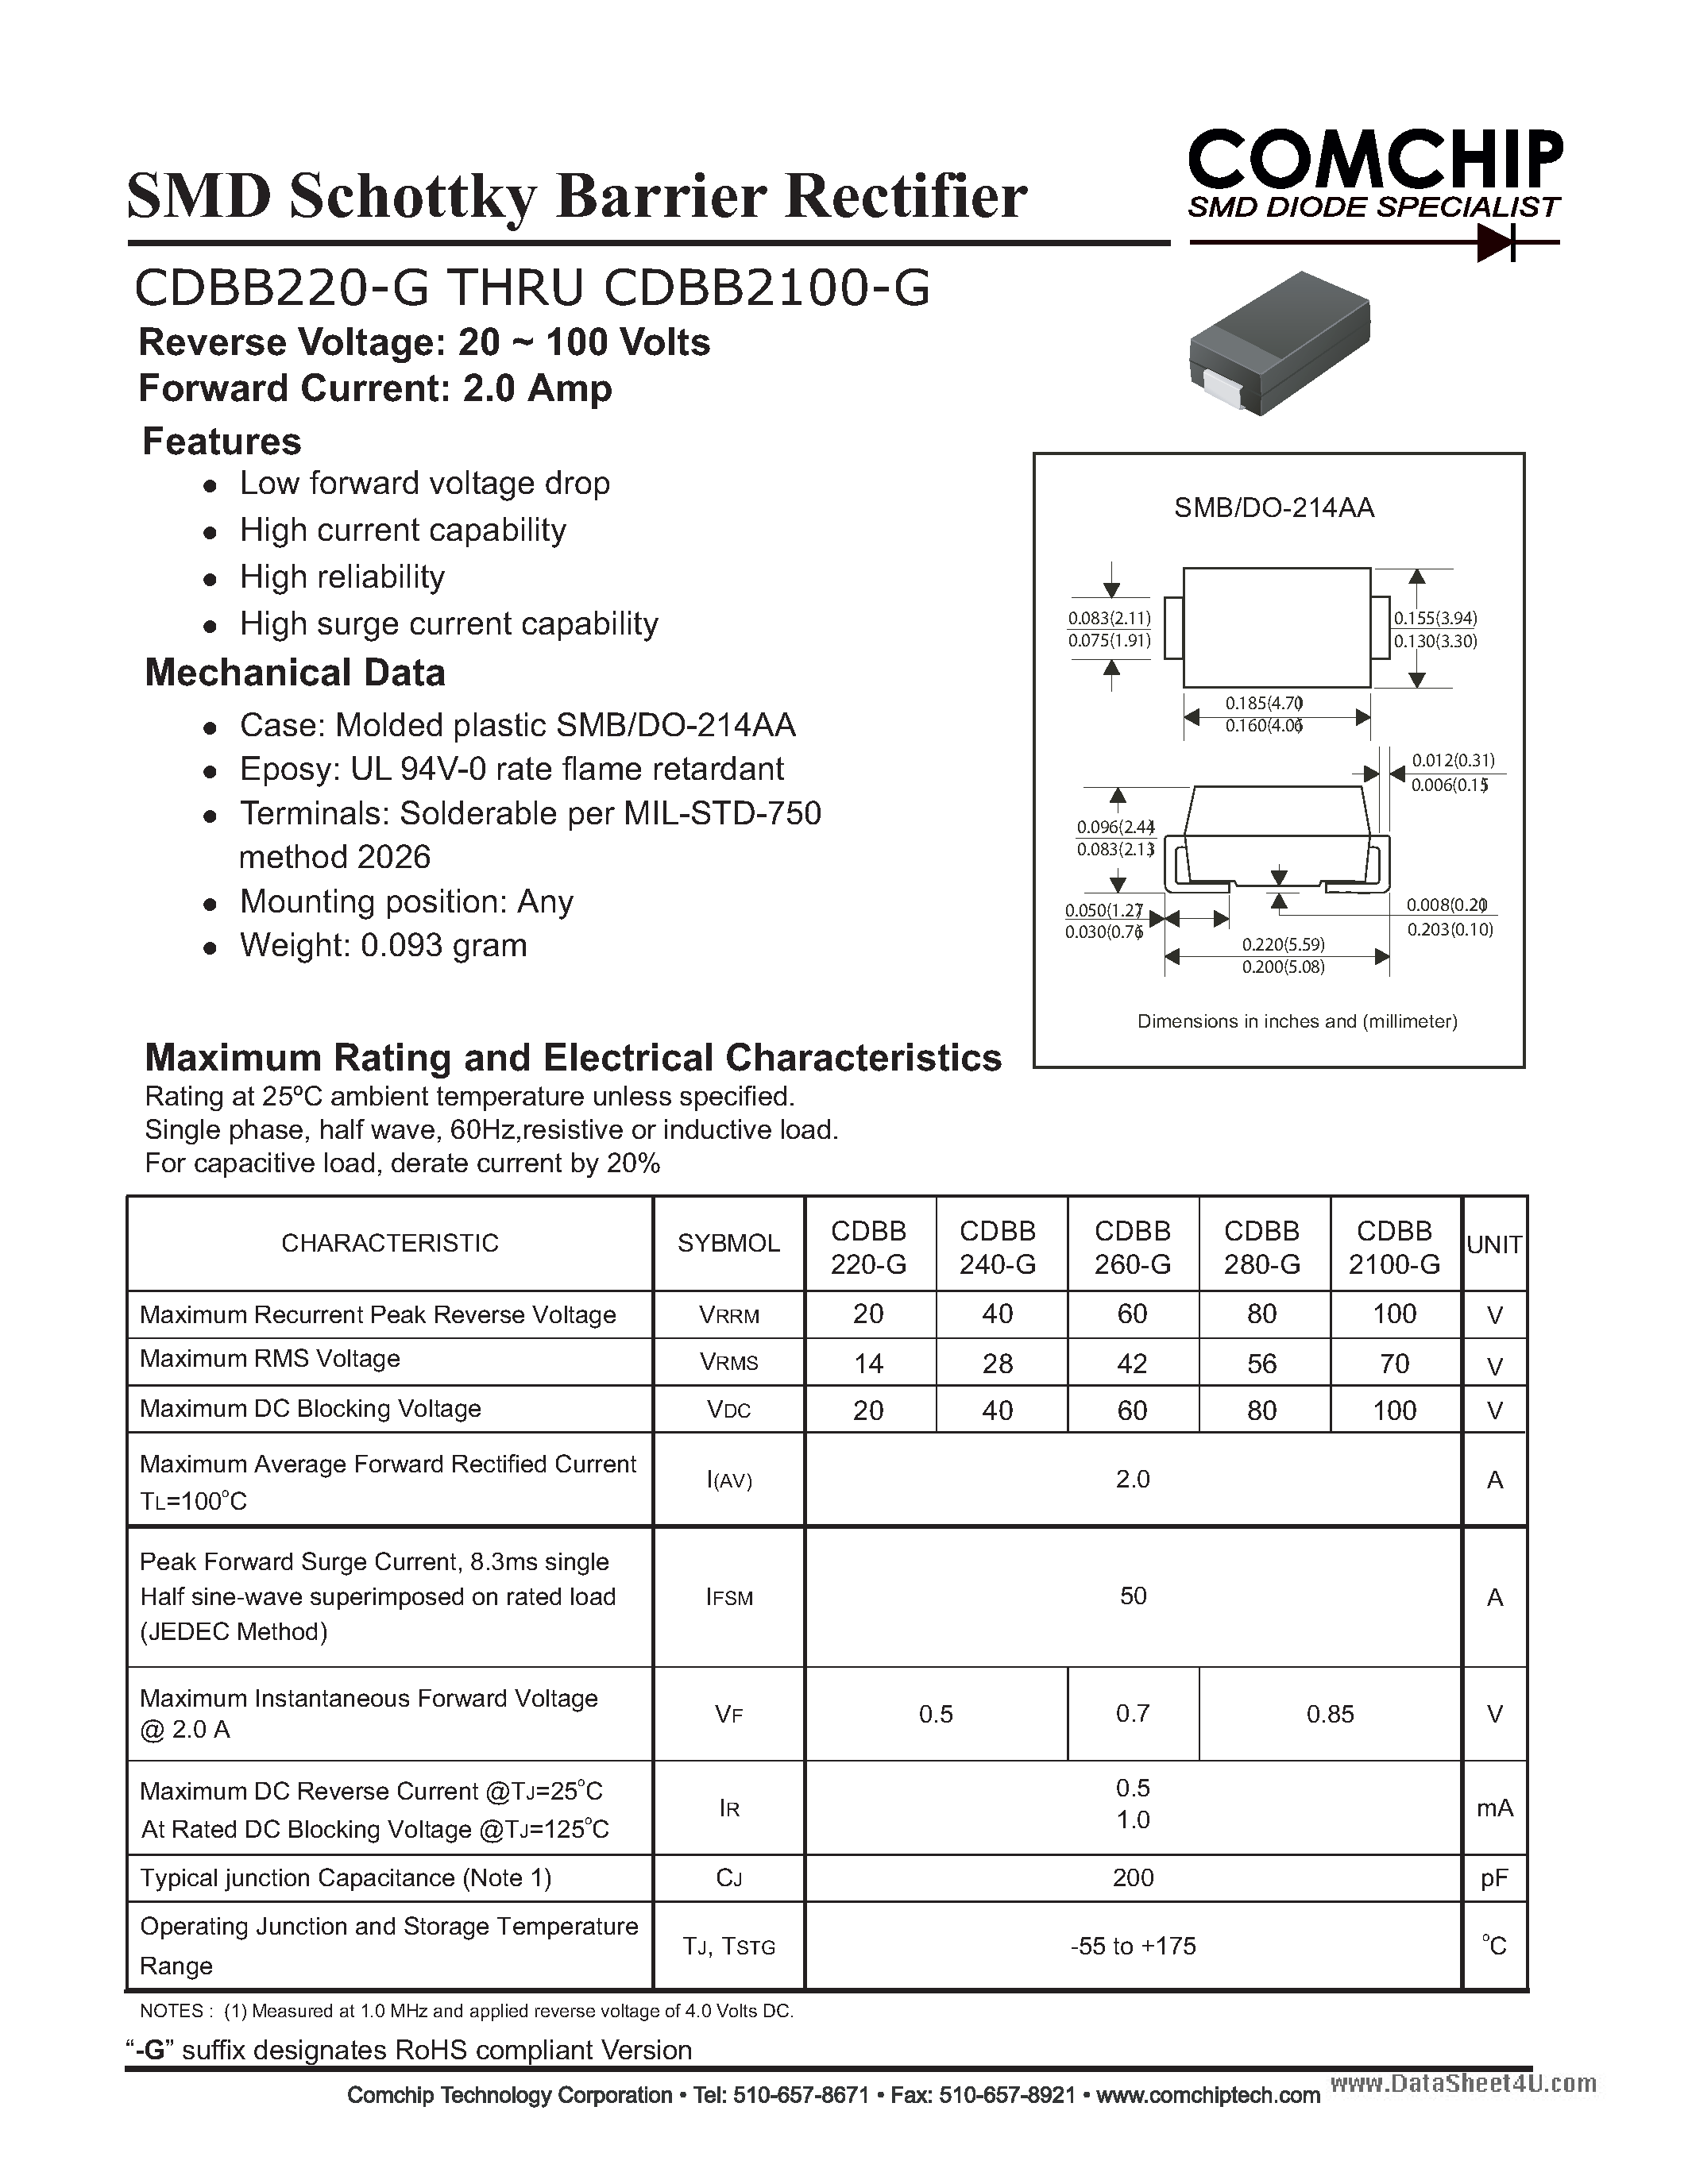 Datasheet CDBB2100-G - (CDBB220-G - CDBB2100-G) SMD Schottky Barrier Rectifier page 1